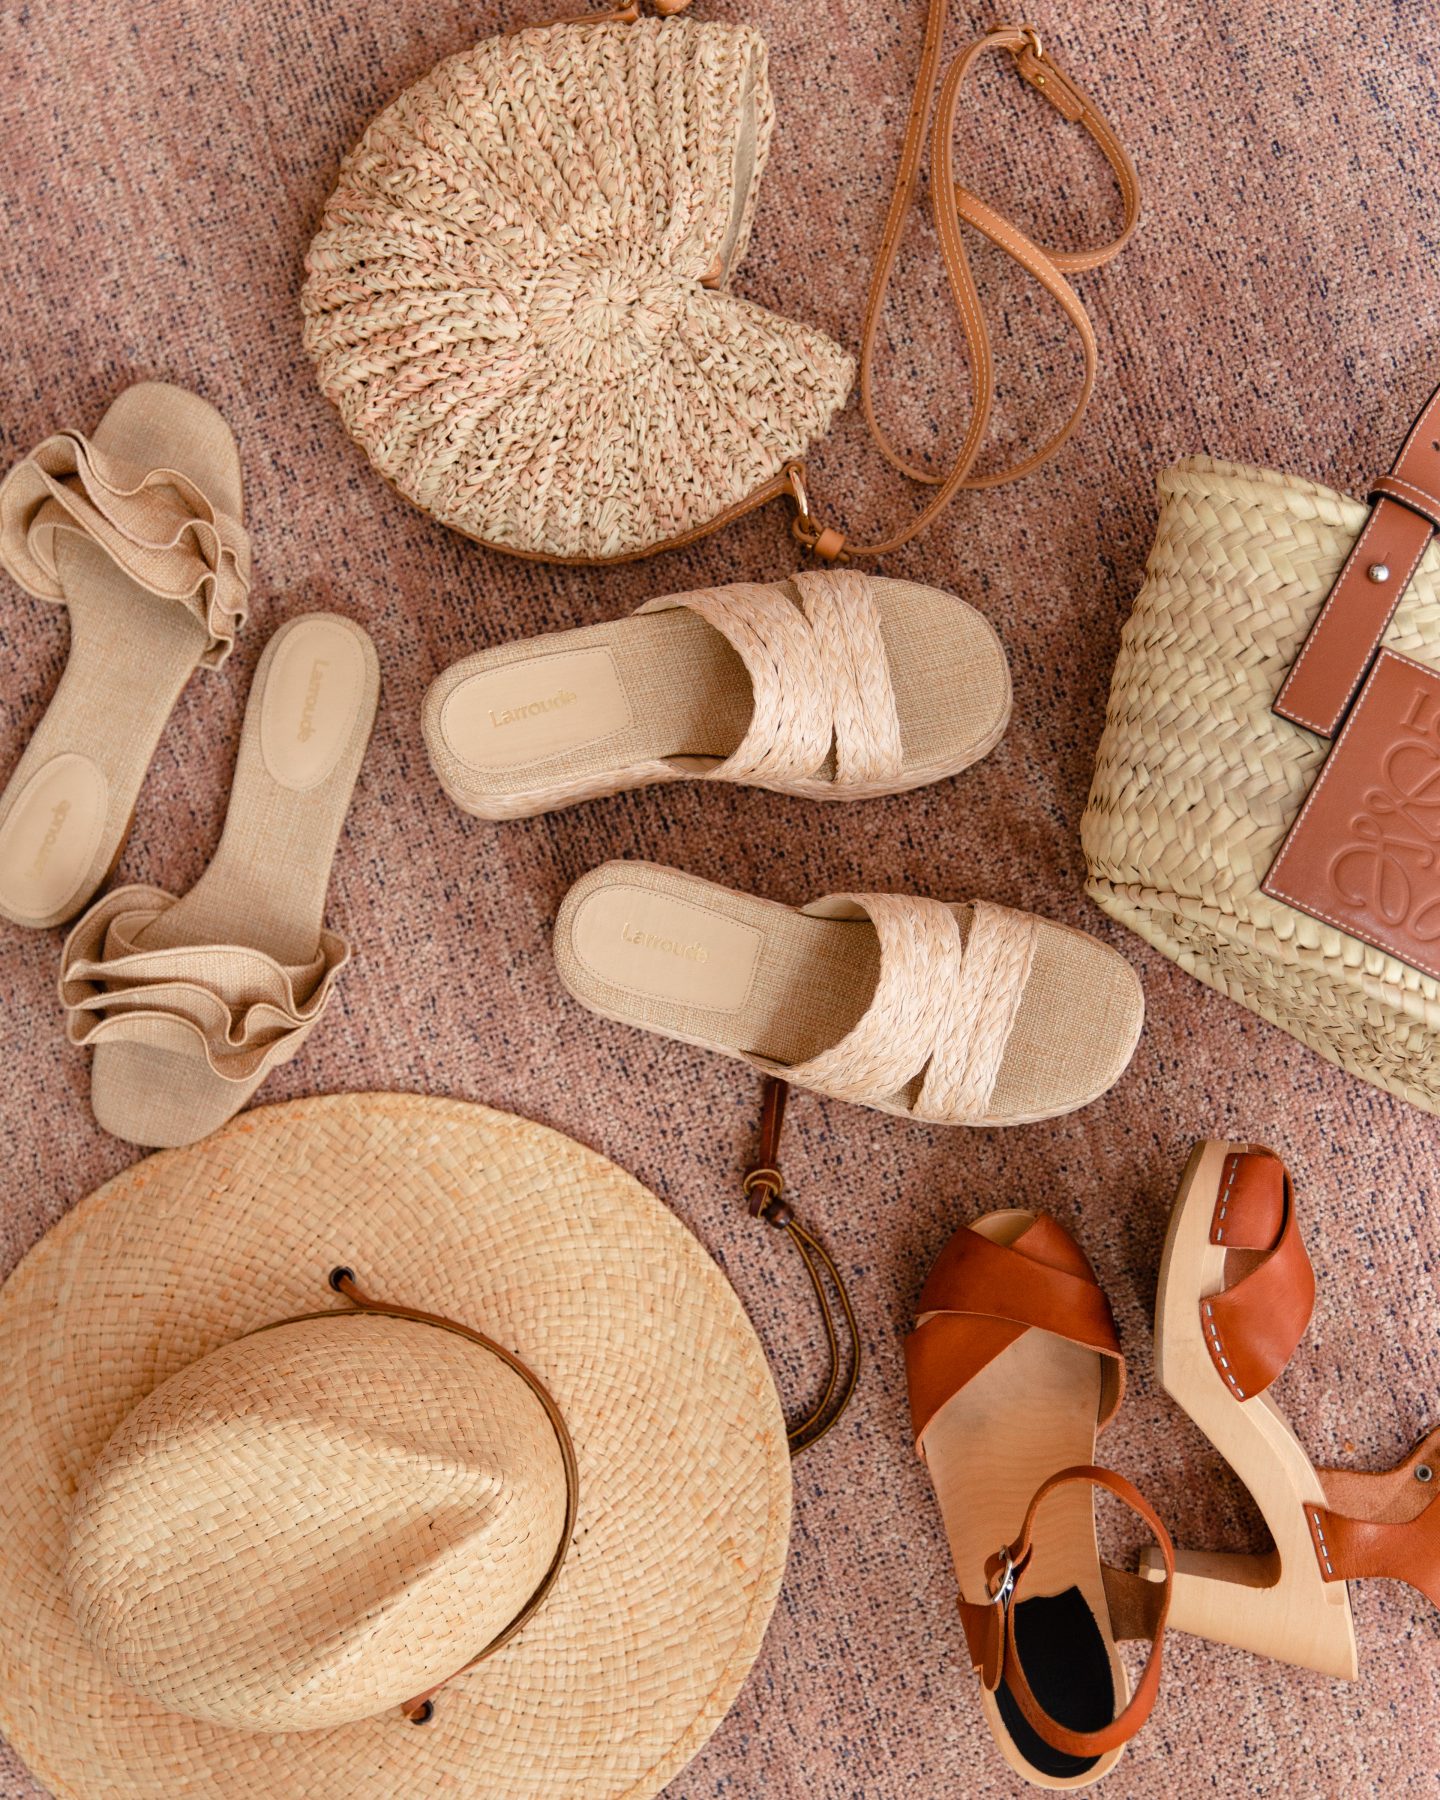 summer-accessories